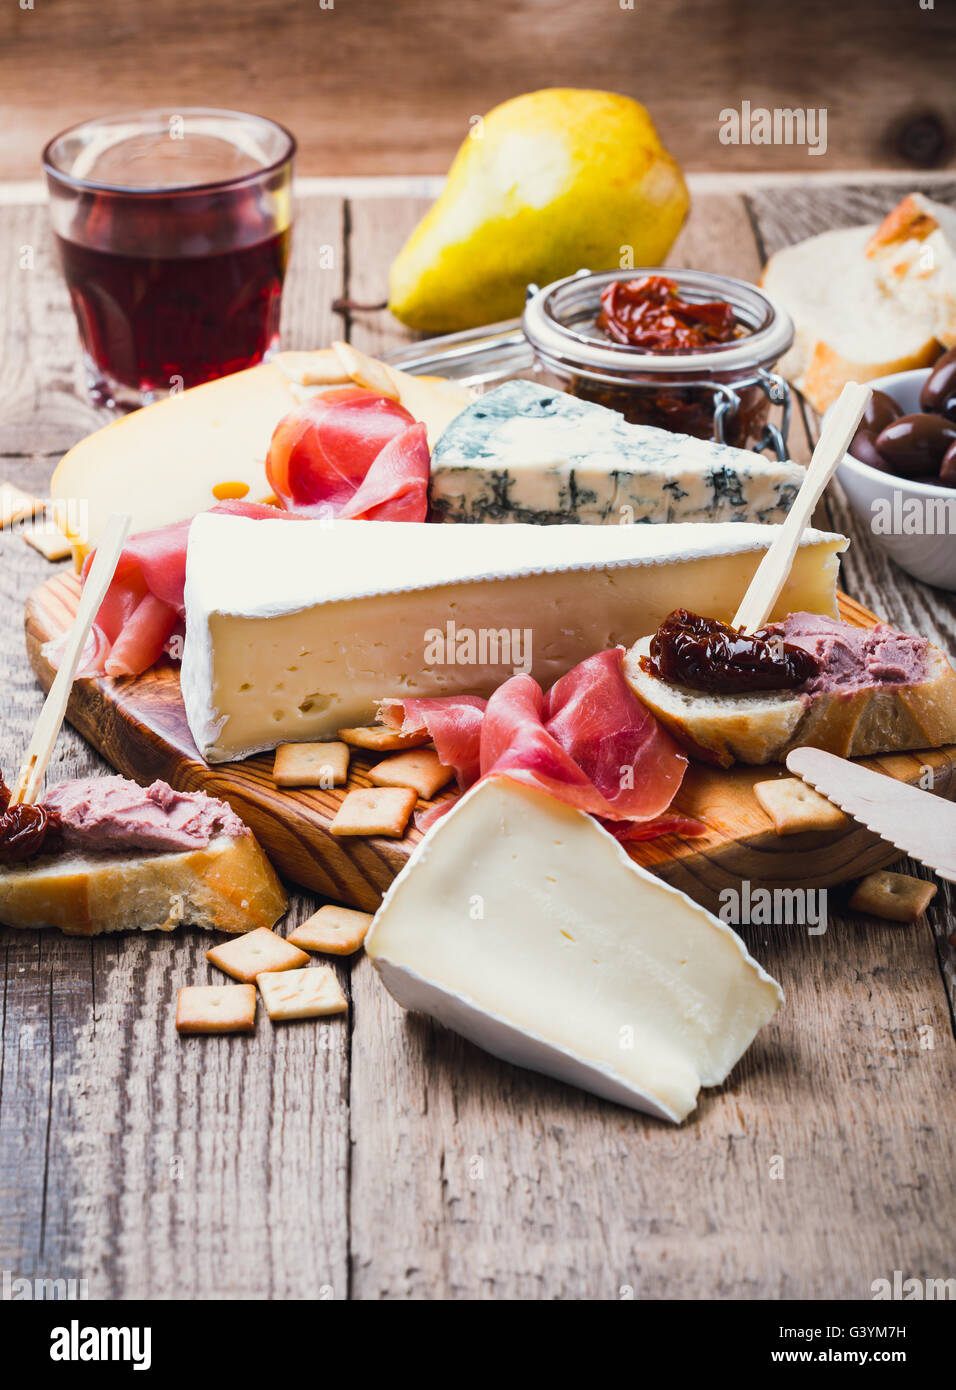 Piatto di antipasti con diversi la carne e i formaggi prodotti sul pannello di legno Foto Stock